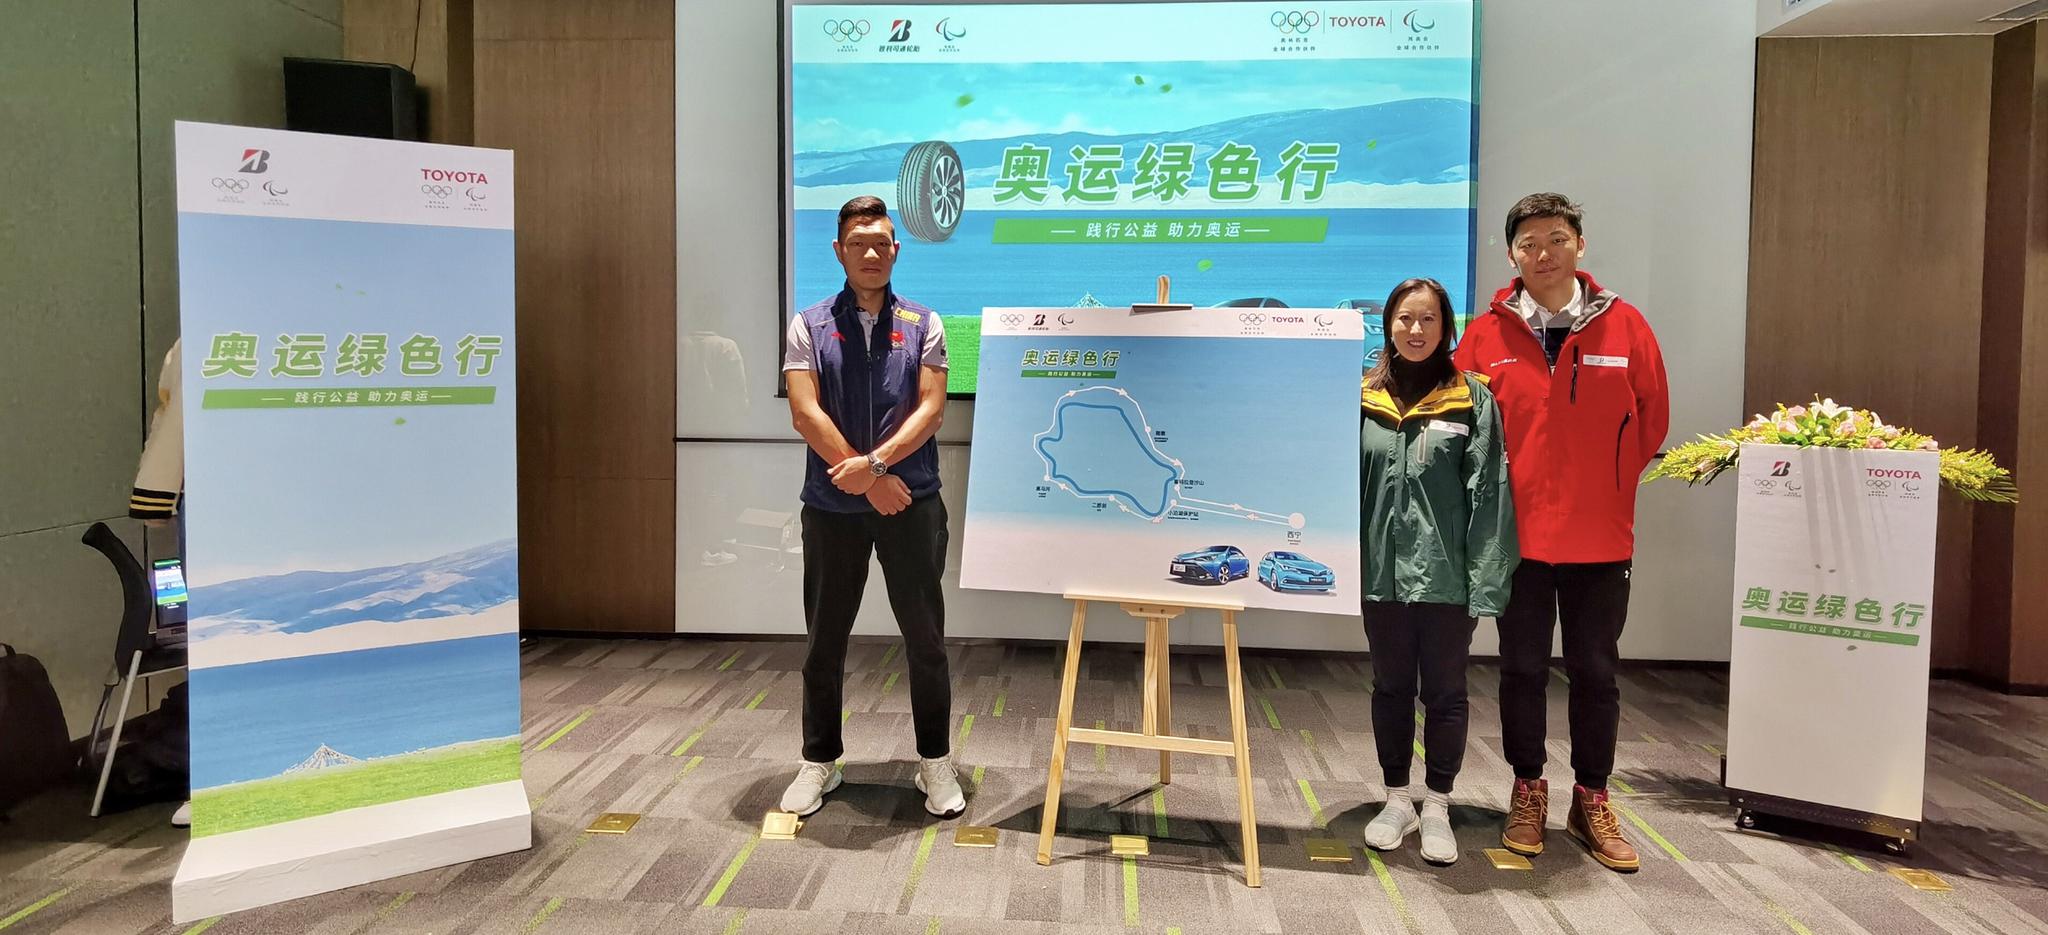 北京2022年冬奥会与冬残奥组织委员会代表、普利司通（中国）代表、丰田汽车（中国）代表（由左至右）出席本次“奥运绿色行”公益试驾活动启航仪式